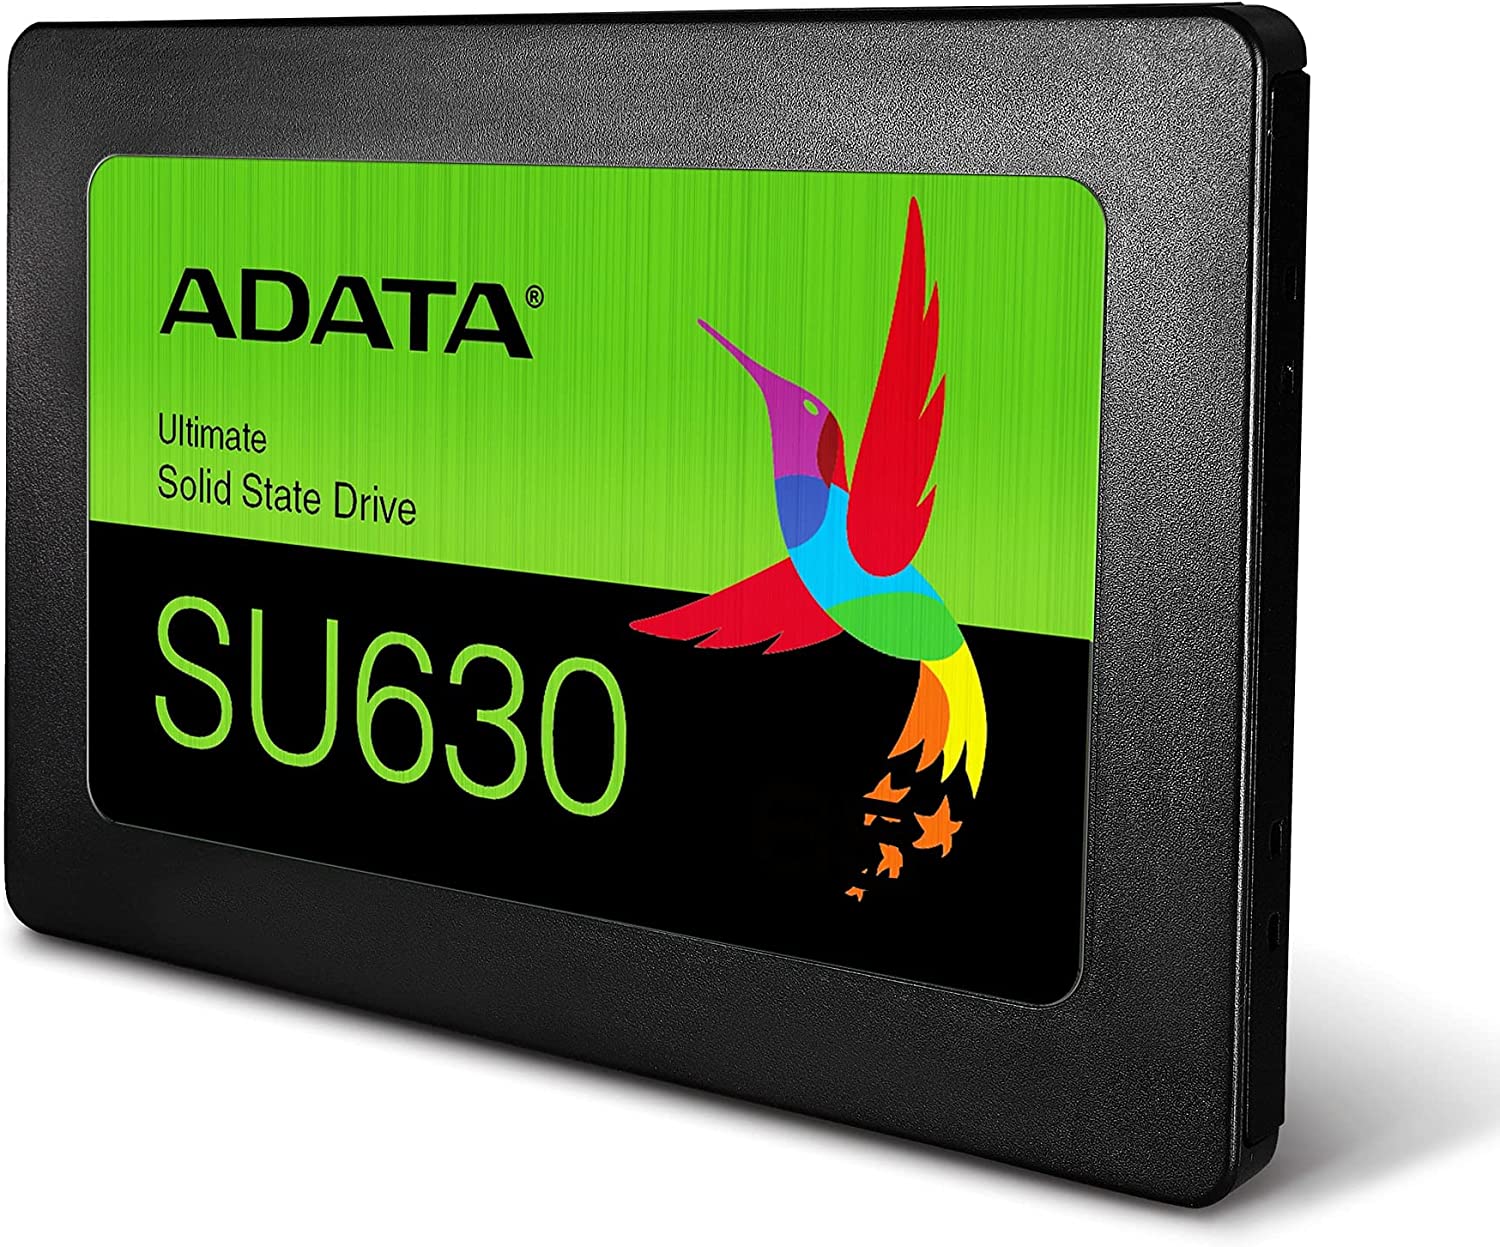 Disco Duro Solido SSD Adata 960Gb SU630, 2.5 para Laptop y Pc, Nuevo, garantia 1 año